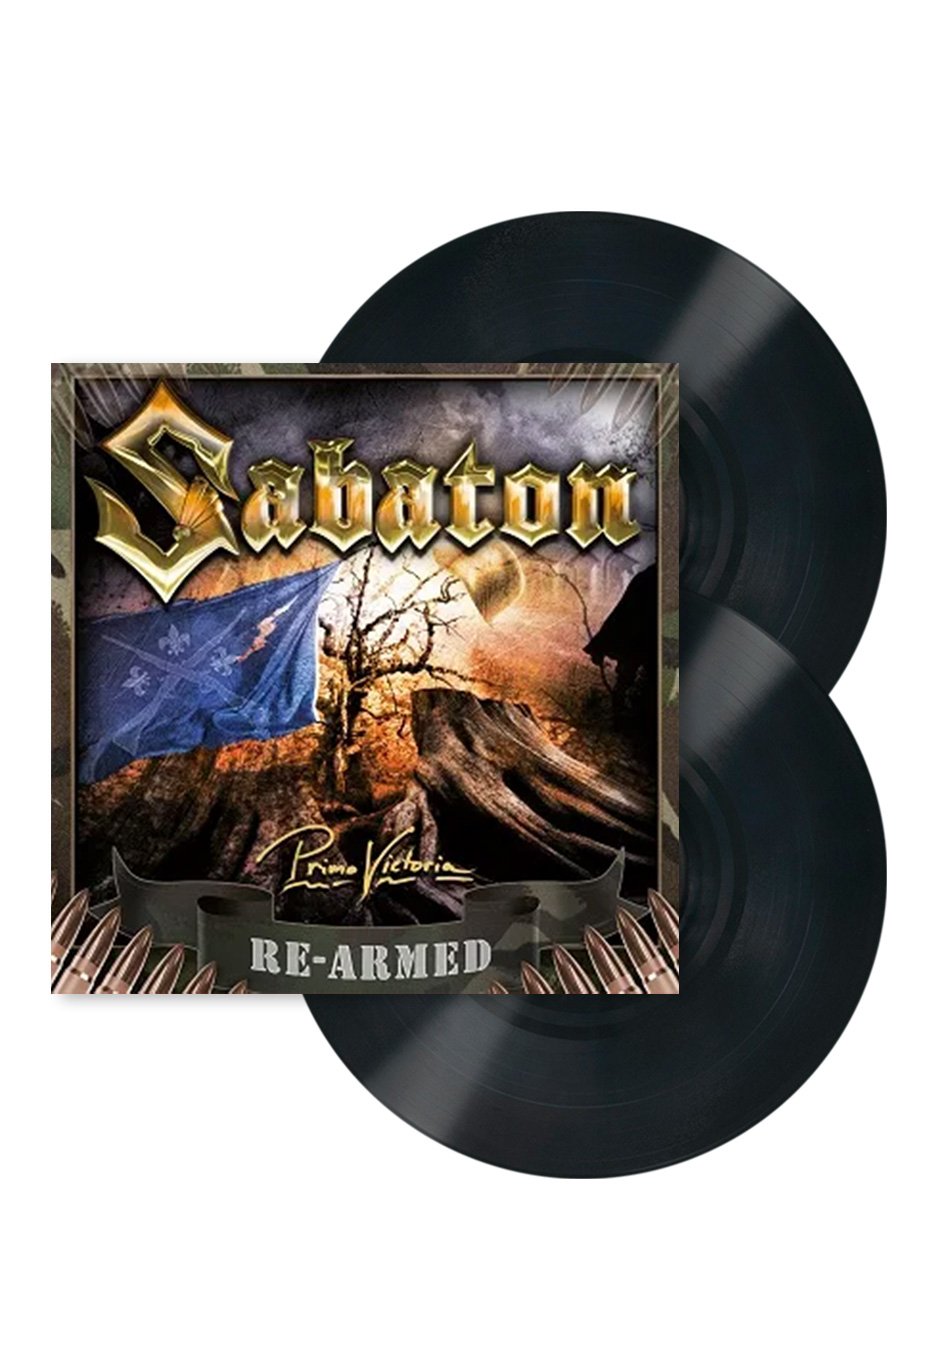 Sabaton - Primo Victoria Re-Armed - 2 Vinyl